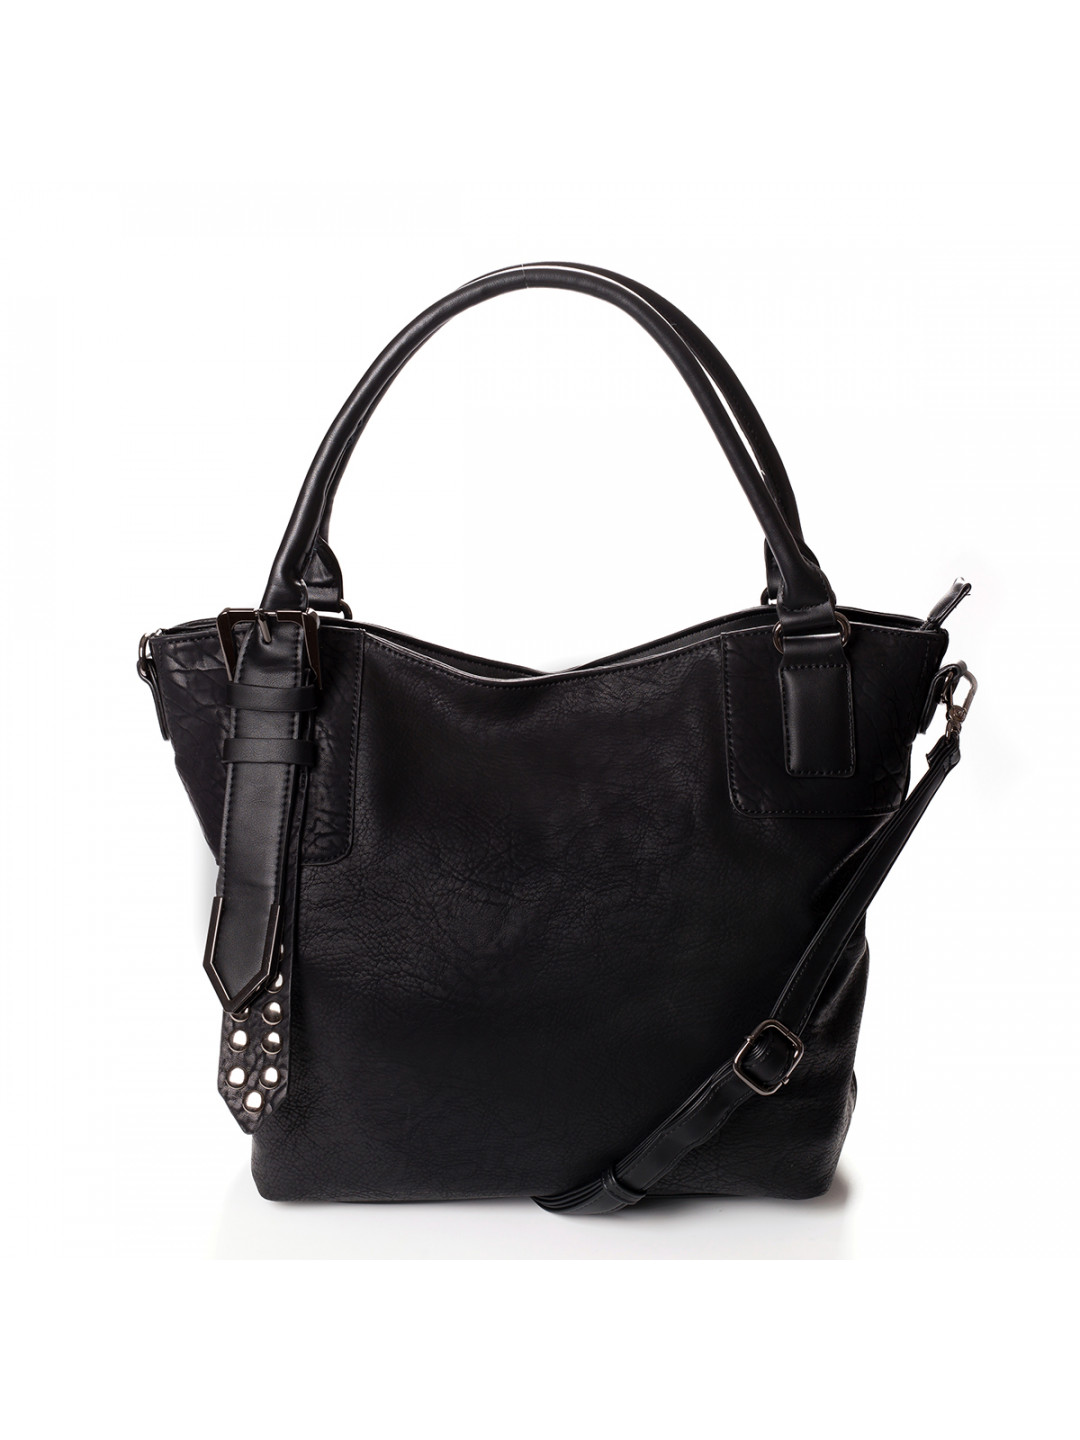 Atraktivní dámská kabelka do ruky Marisa černá